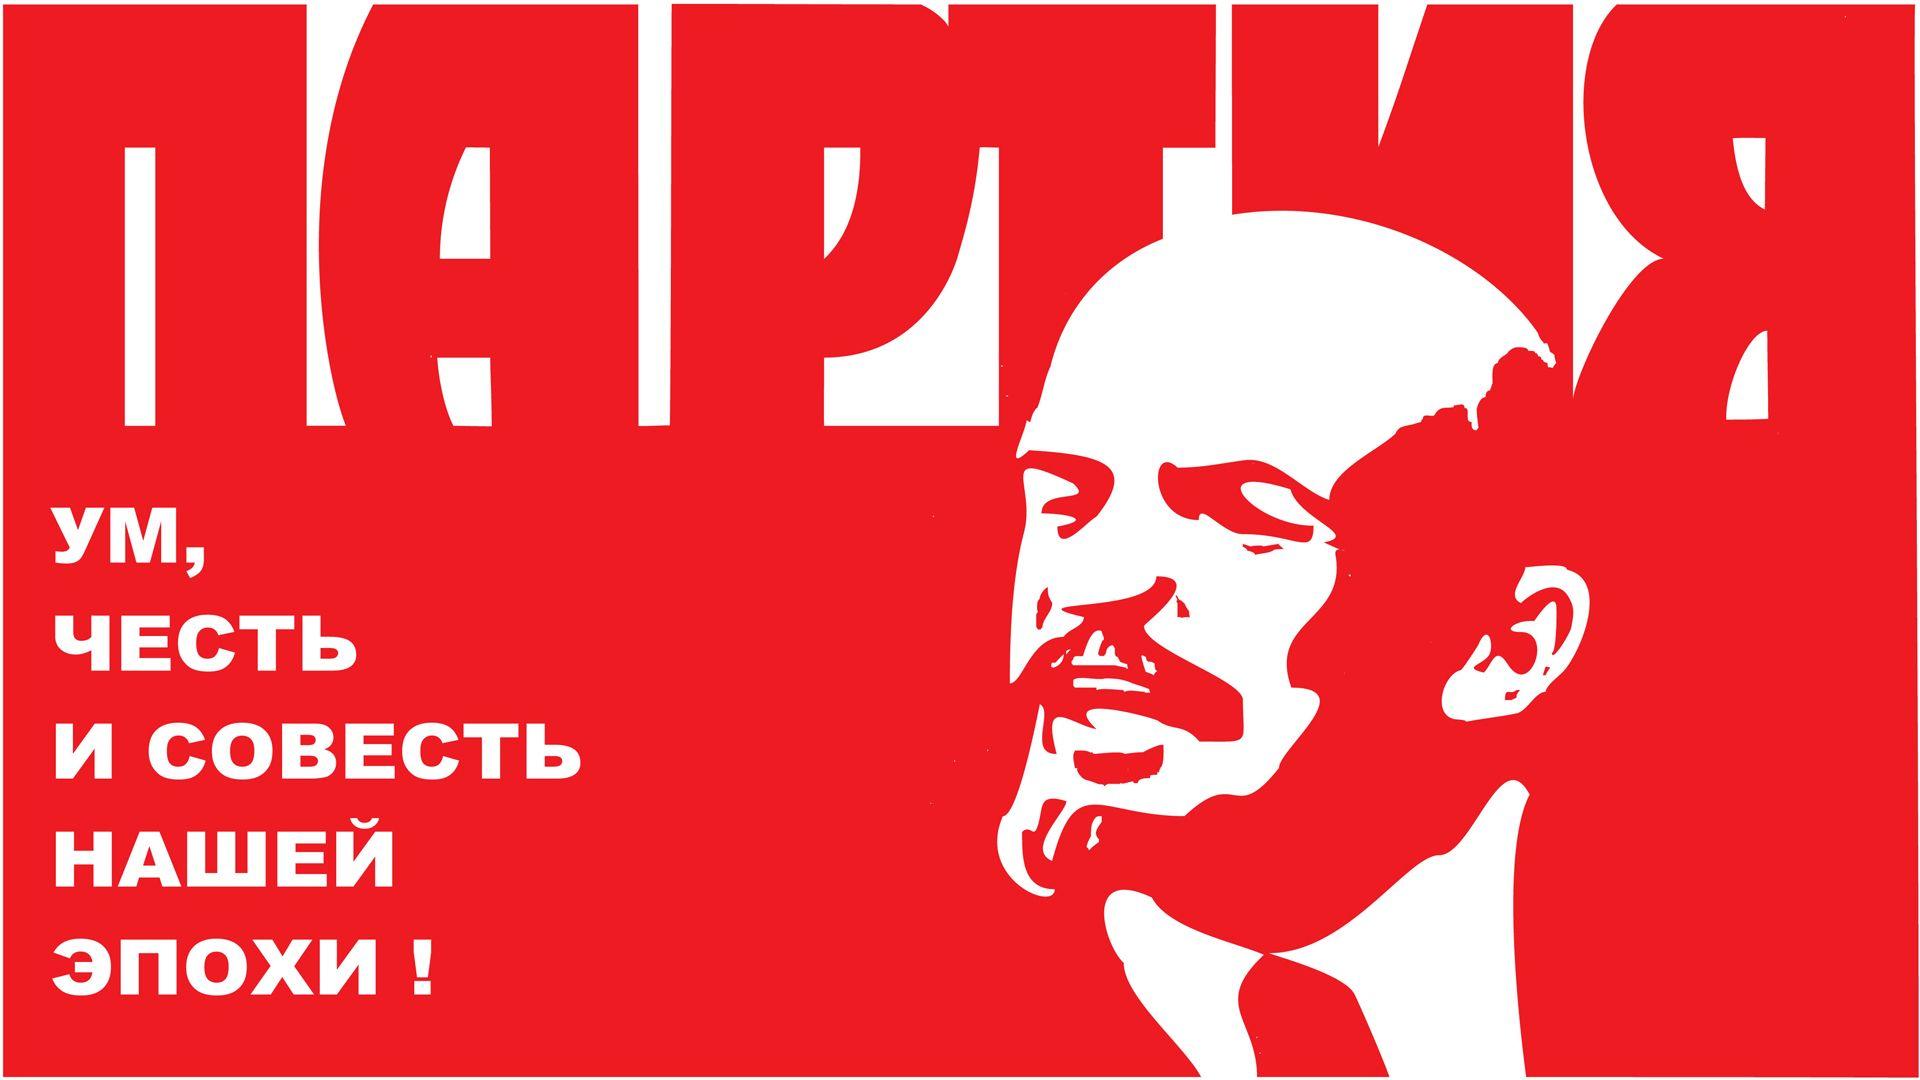 Lenin Phone Wallpaper